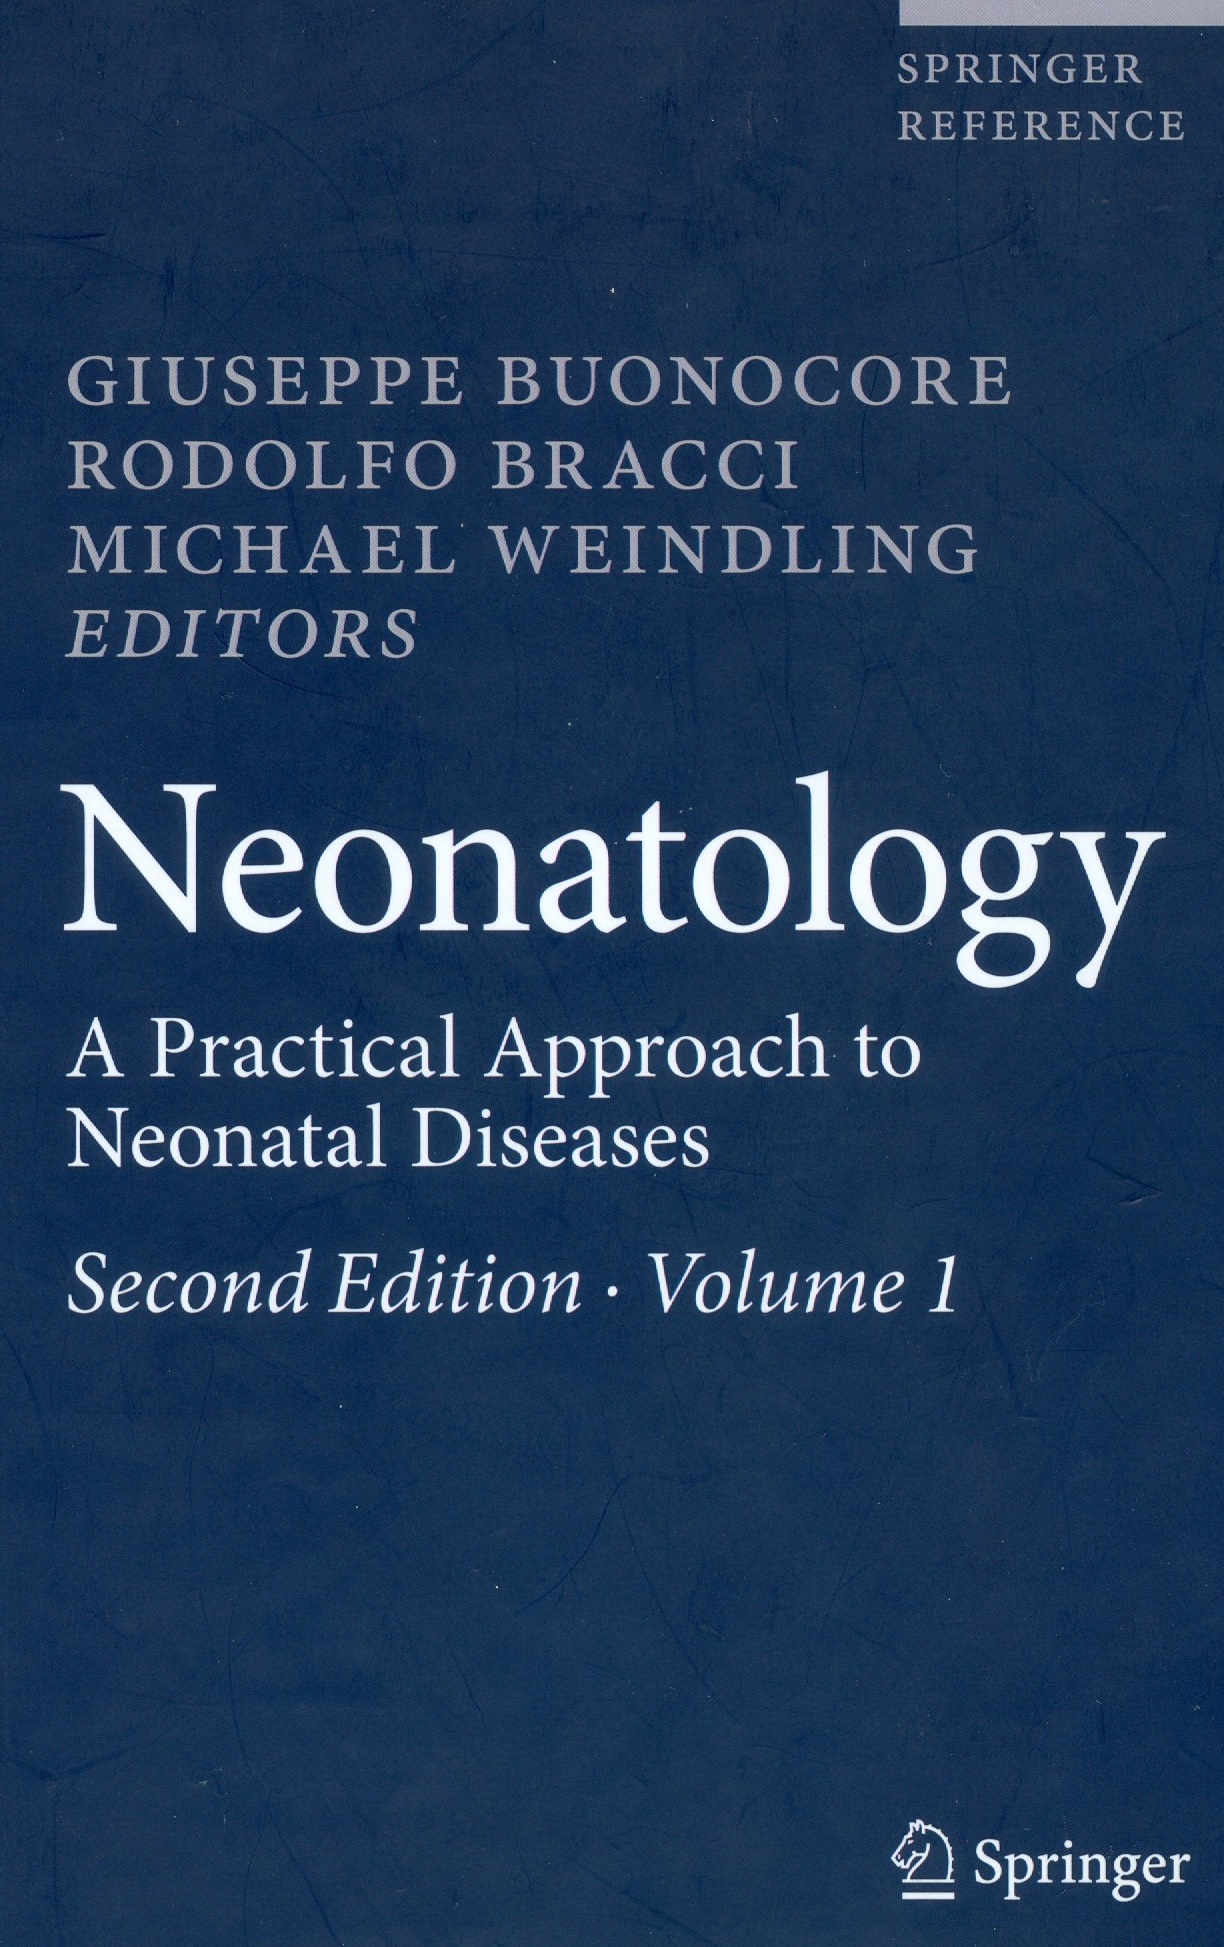 neonatology2